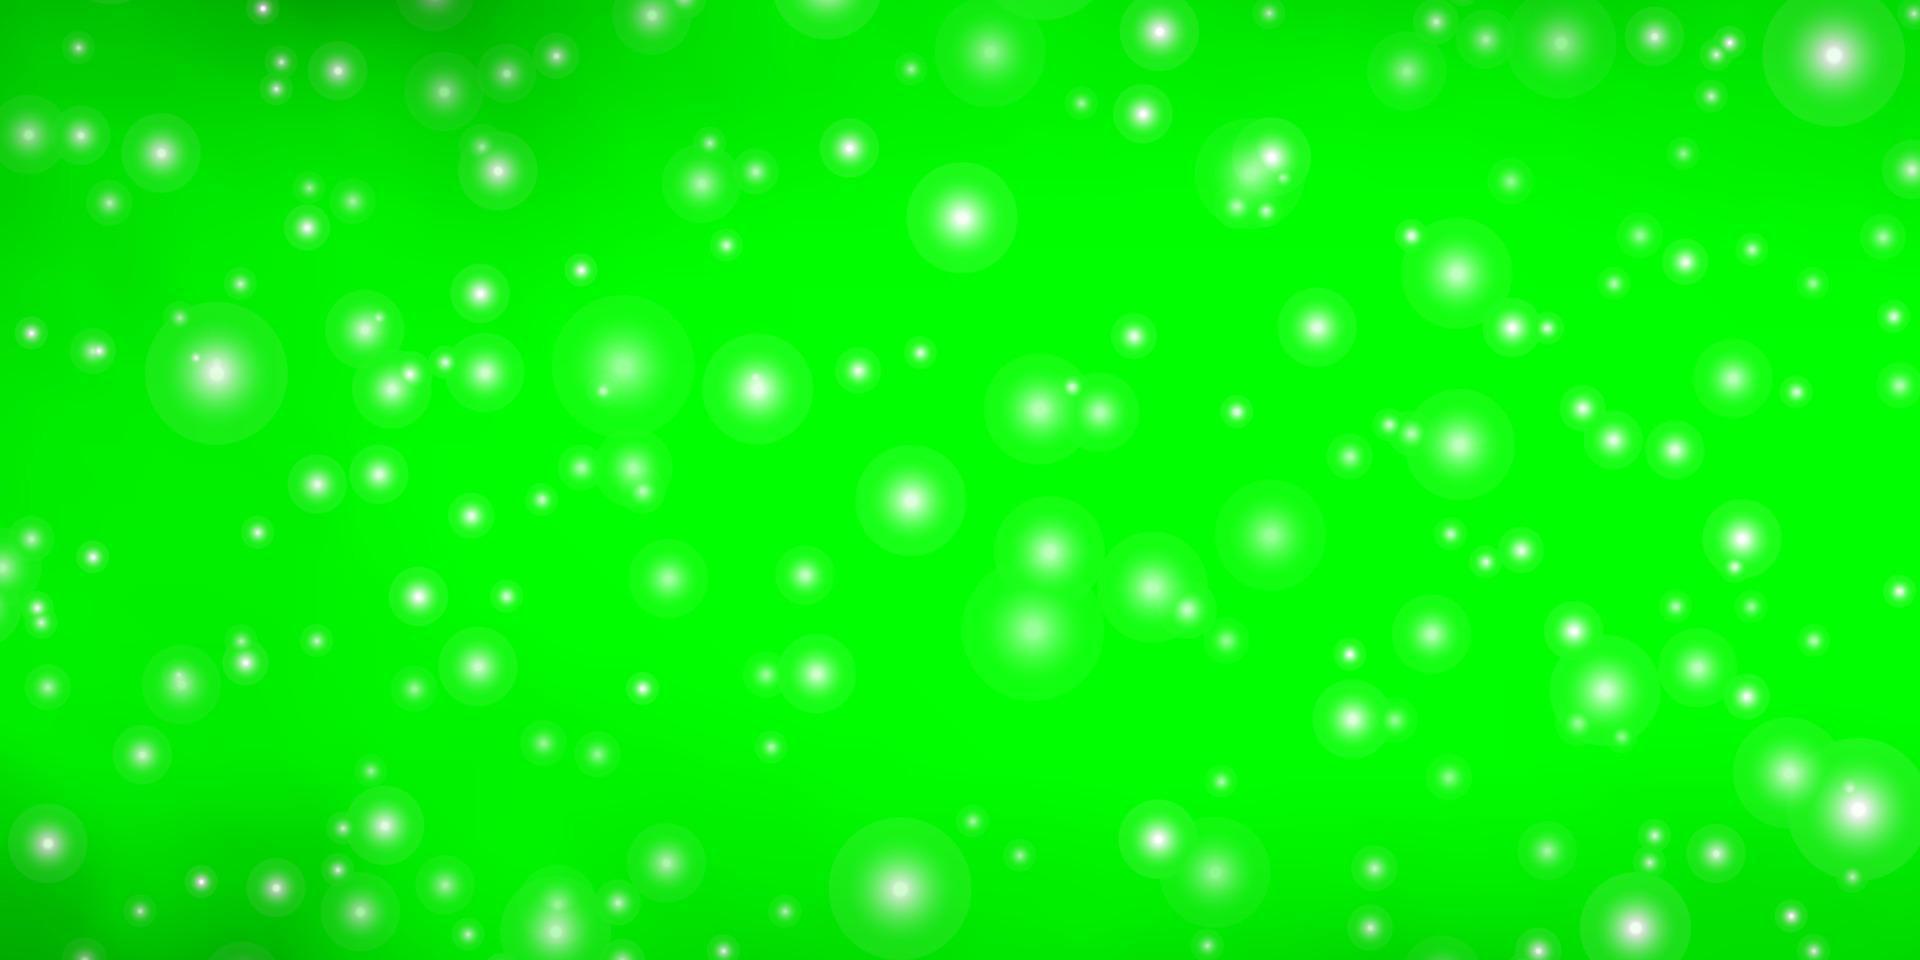 sfondo vettoriale verde chiaro con stelle colorate.